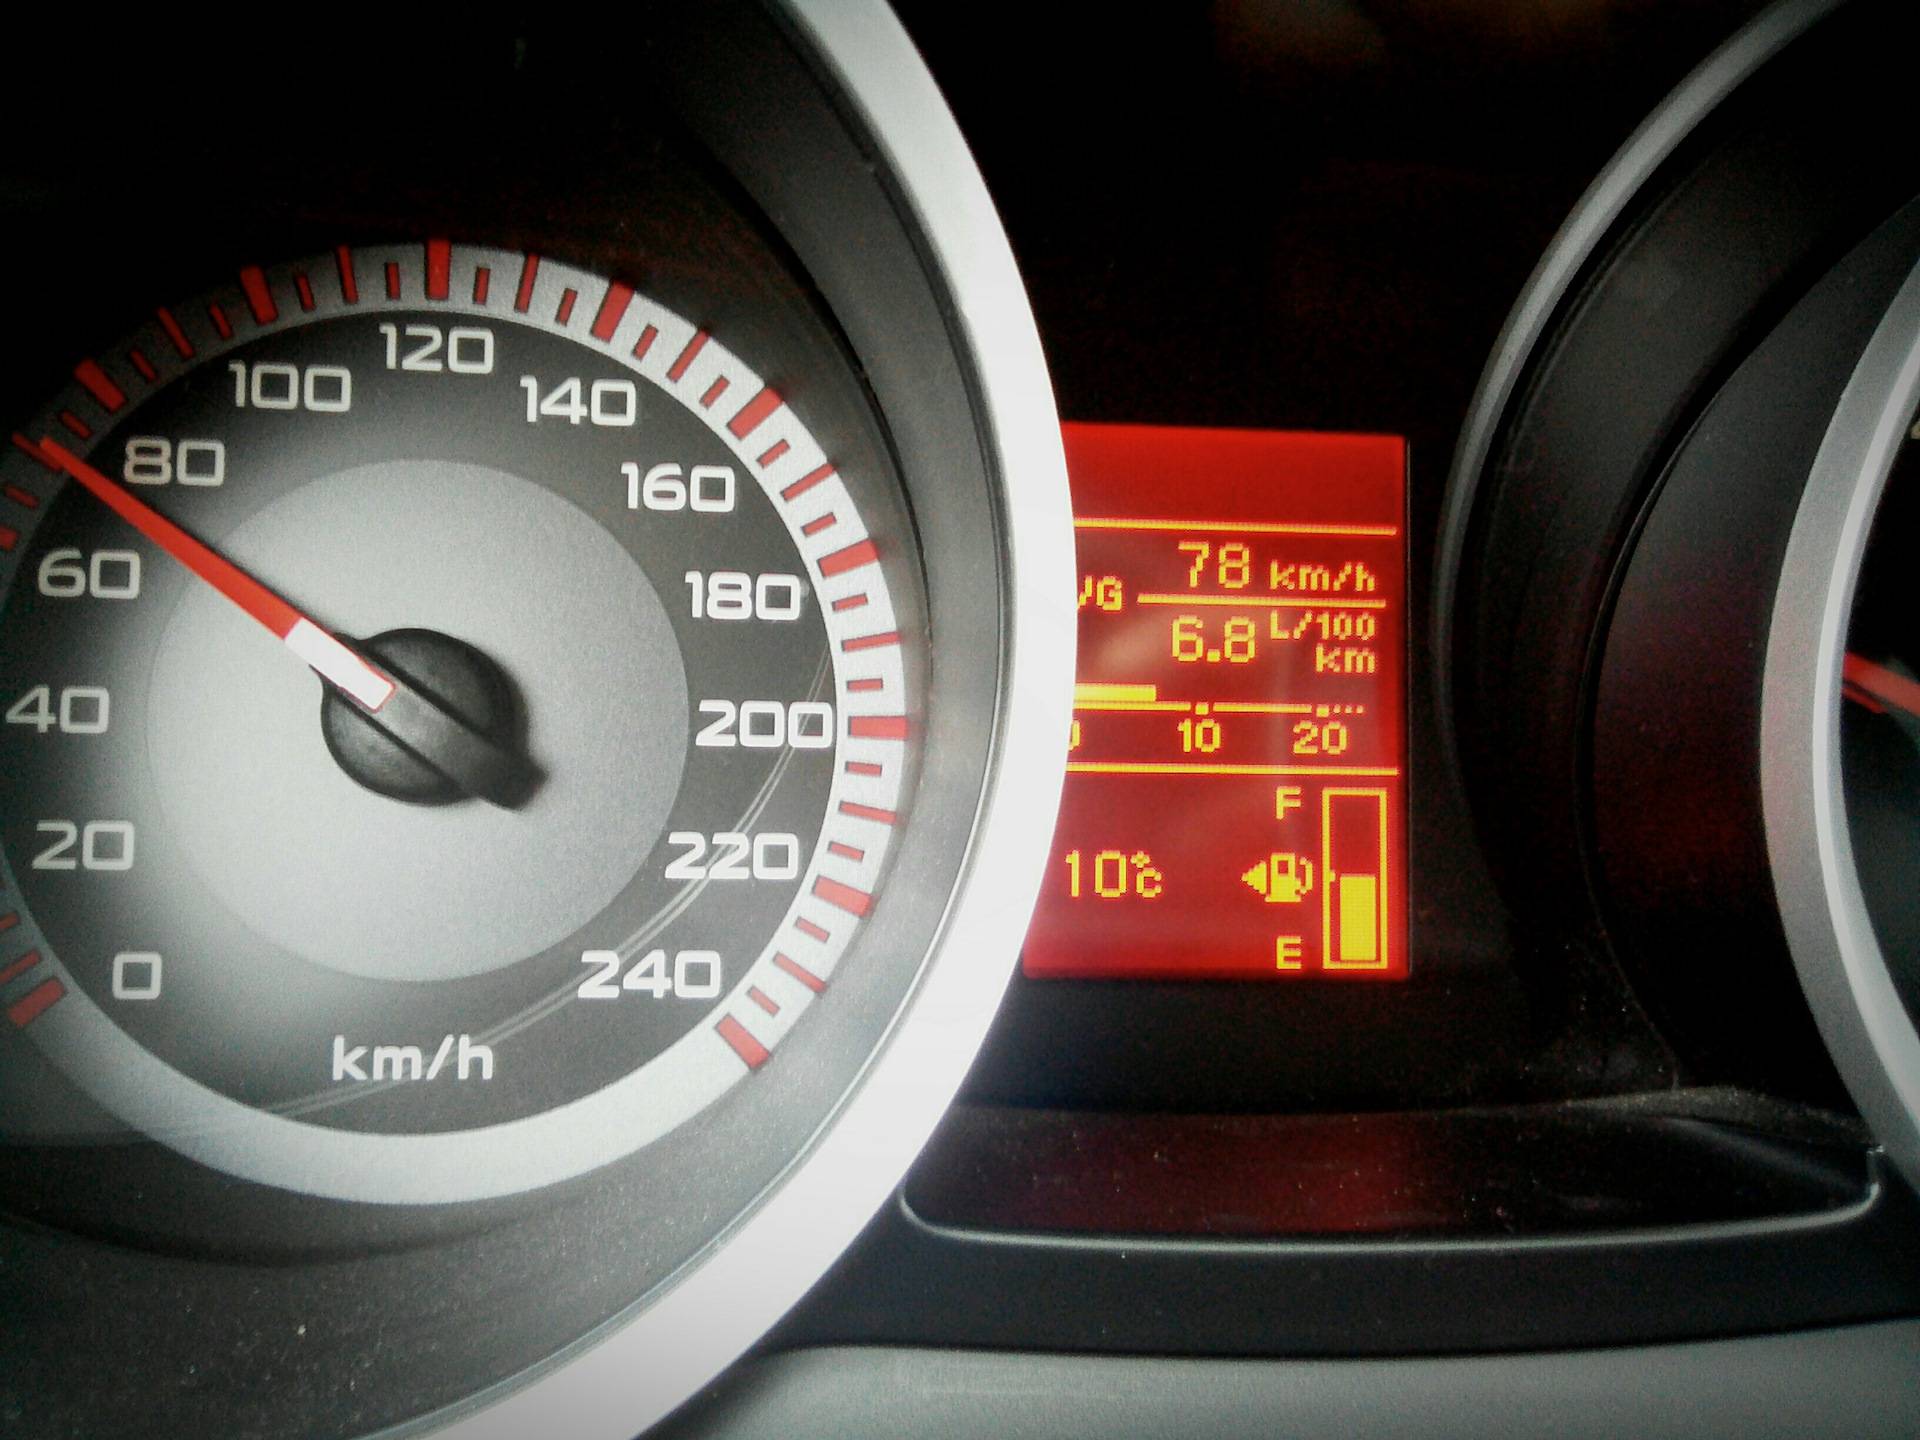 Митсубиси лансер расход топлива на 100 км + отзывы владельцев | официальный сайт